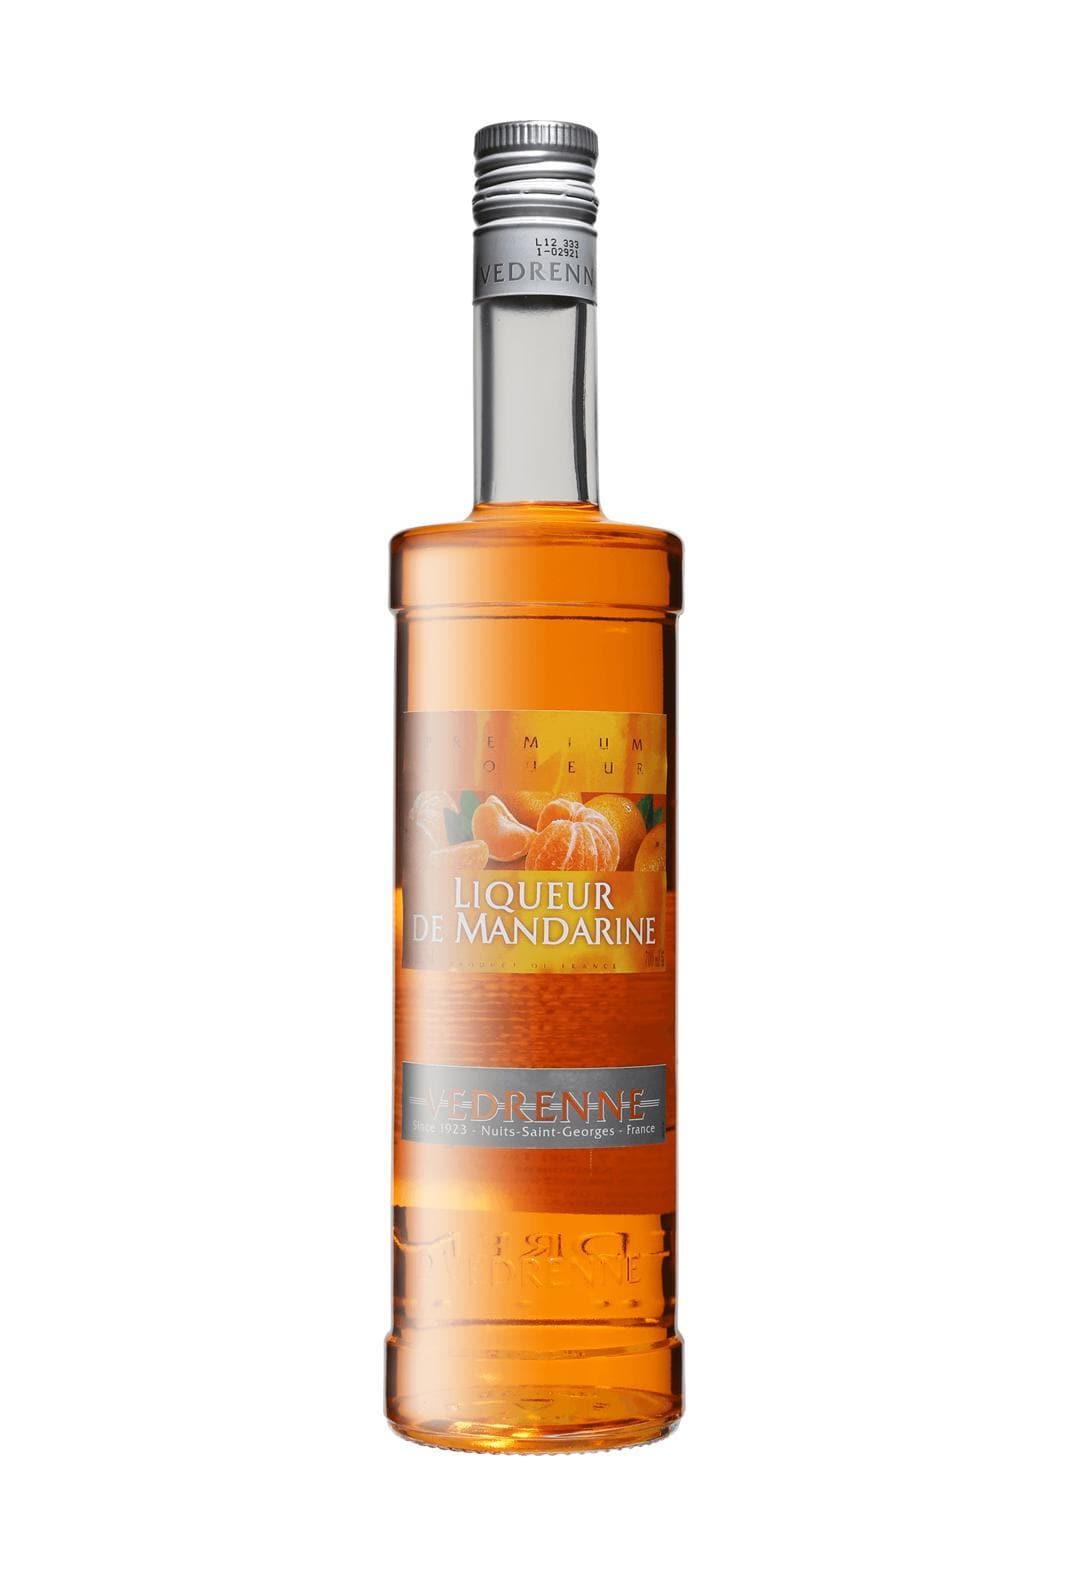 Vedrenne Liqueur de Mandarine (Tangerine) 25% 700ml | Liqueurs | Shop online at Spirits of France